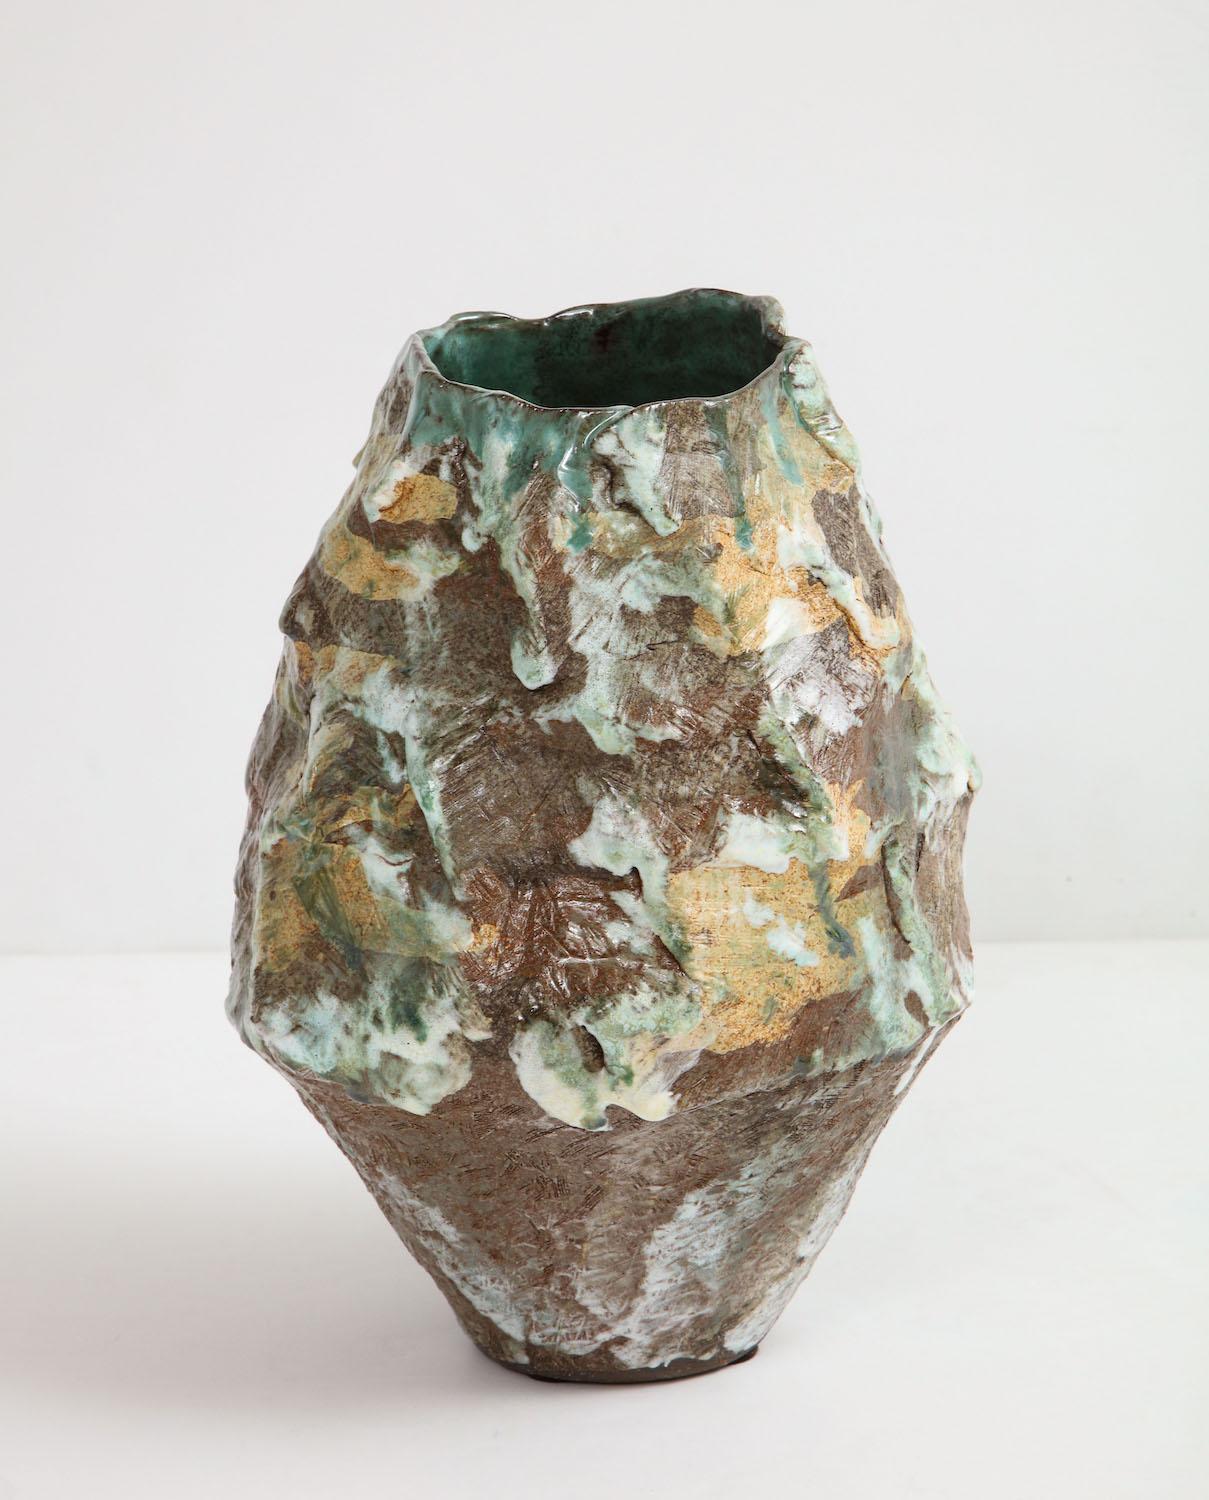 Large sculptural vase #4 by Dena Zemsky. Hand-built, glazed stoneware vase form. Signed and dated on underside.